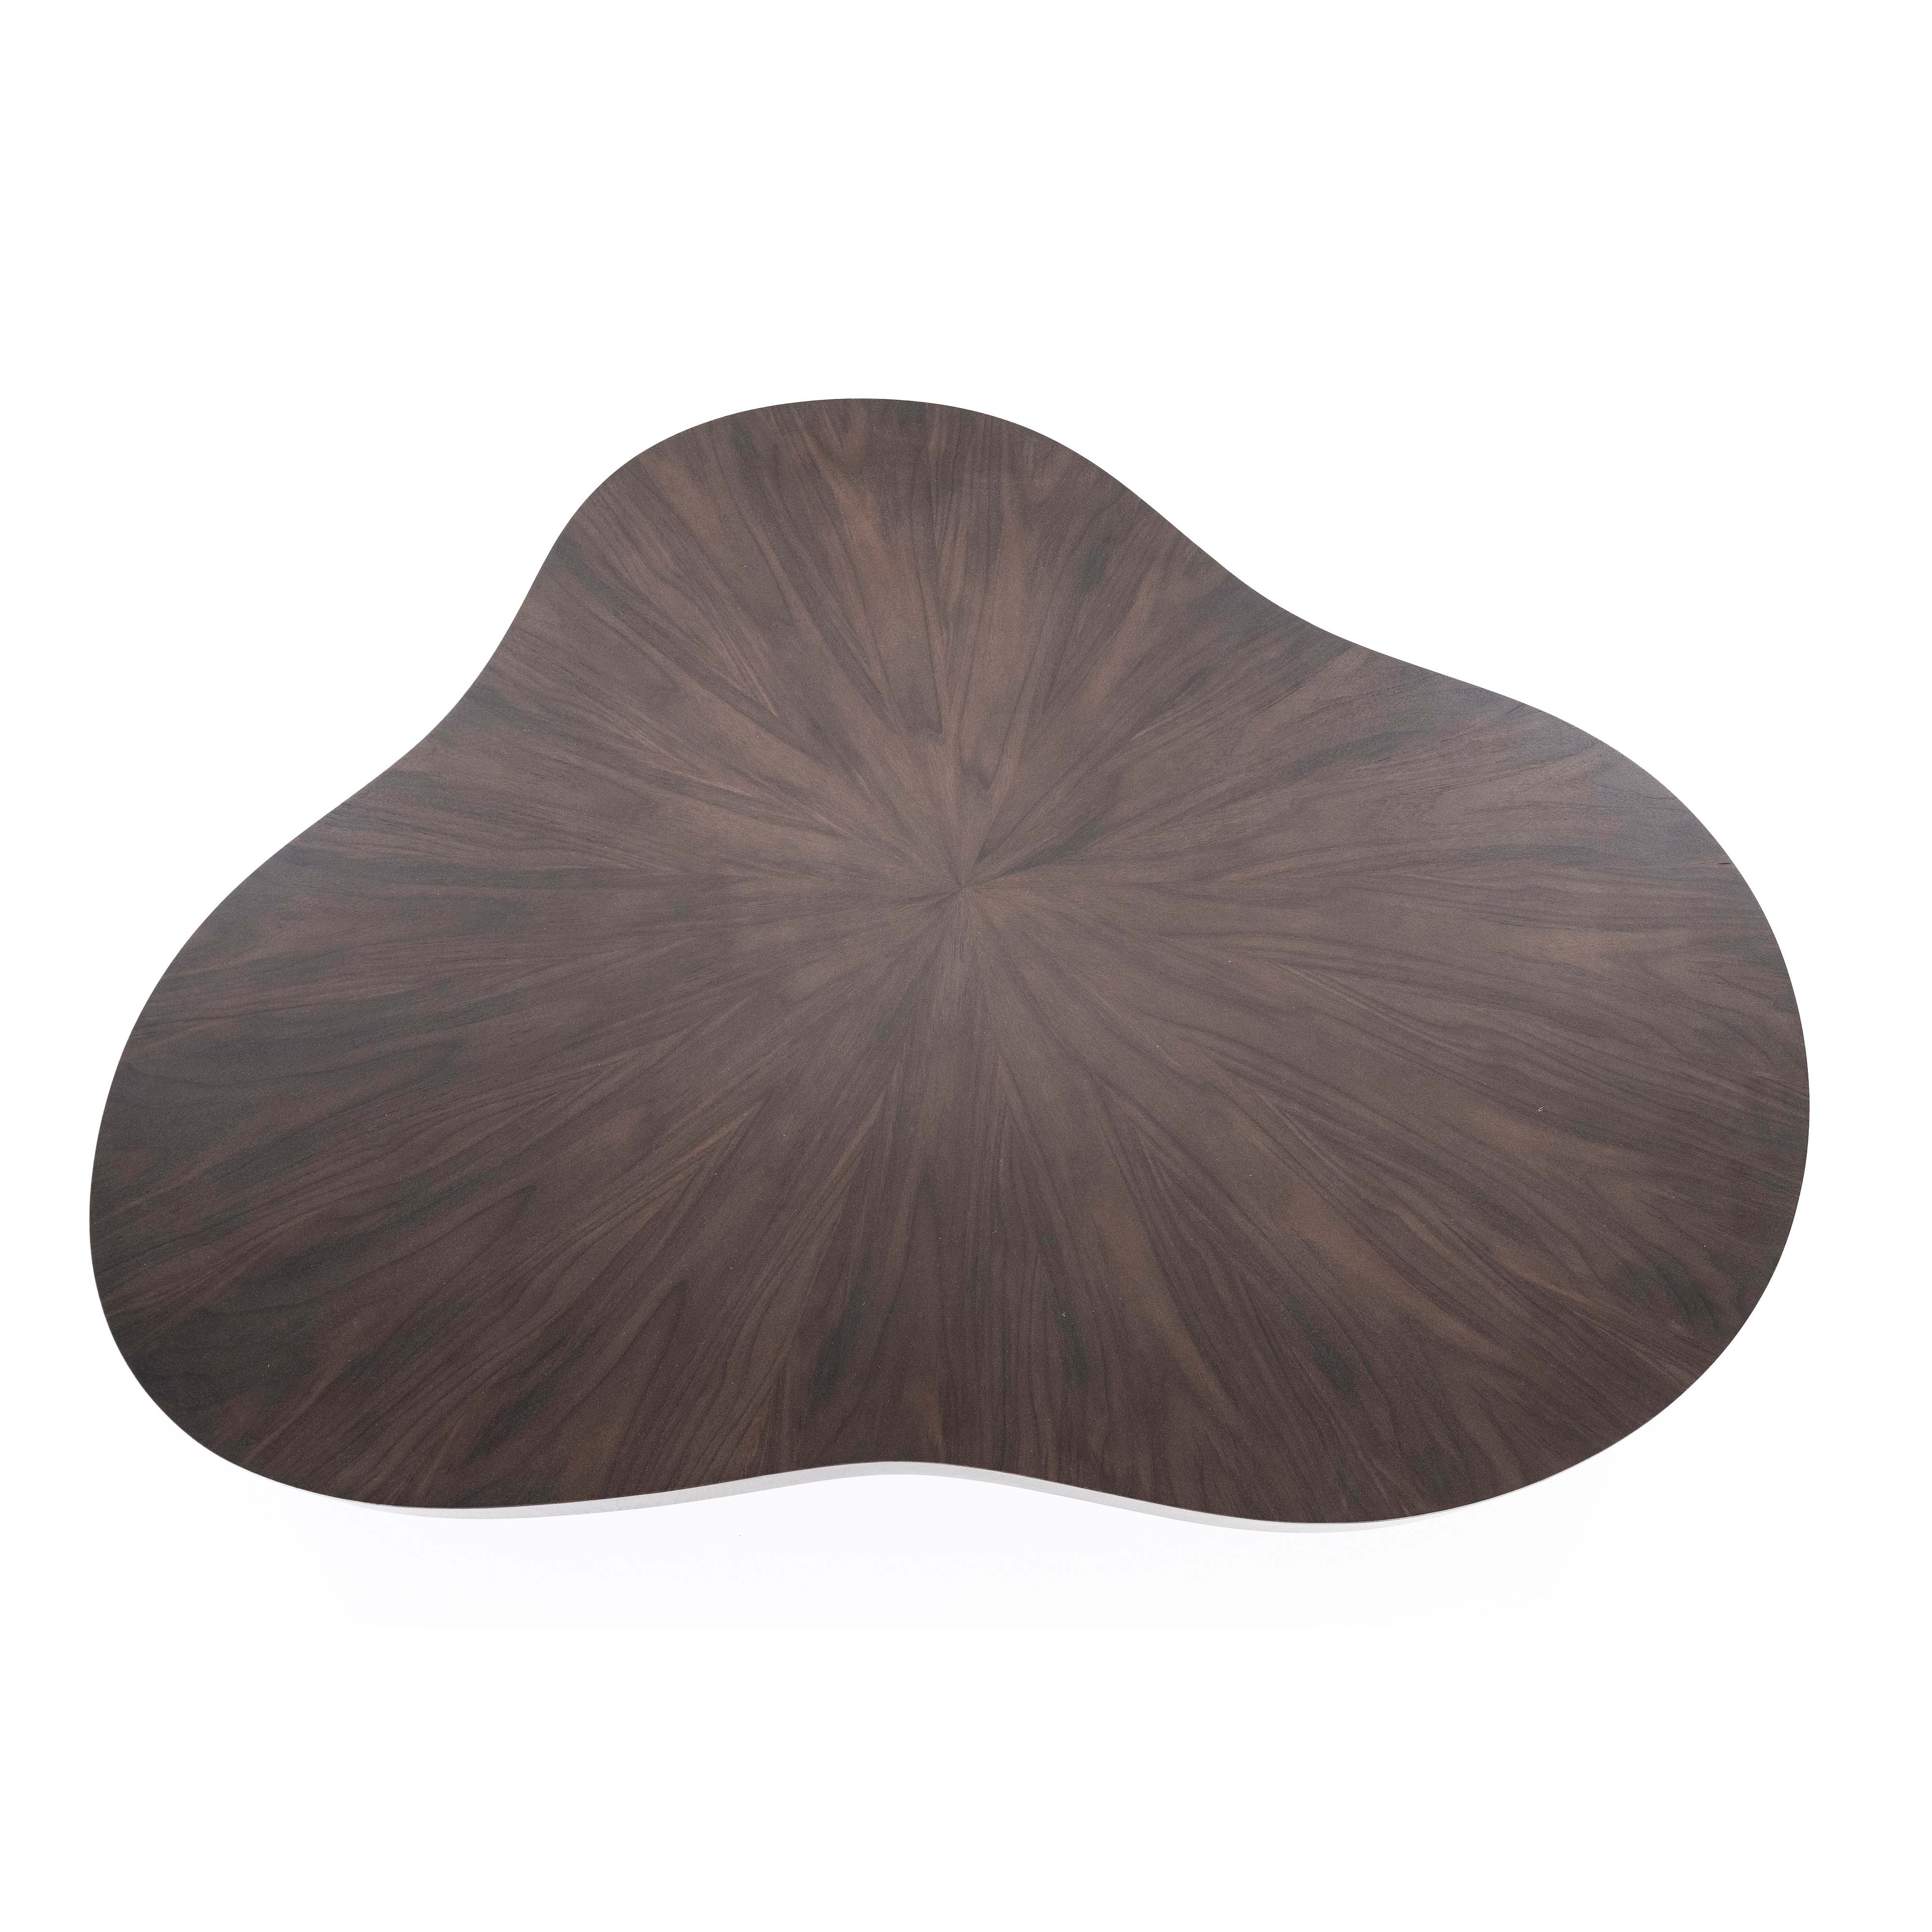 Organische salontafel 150x110cm - walnoot bruin